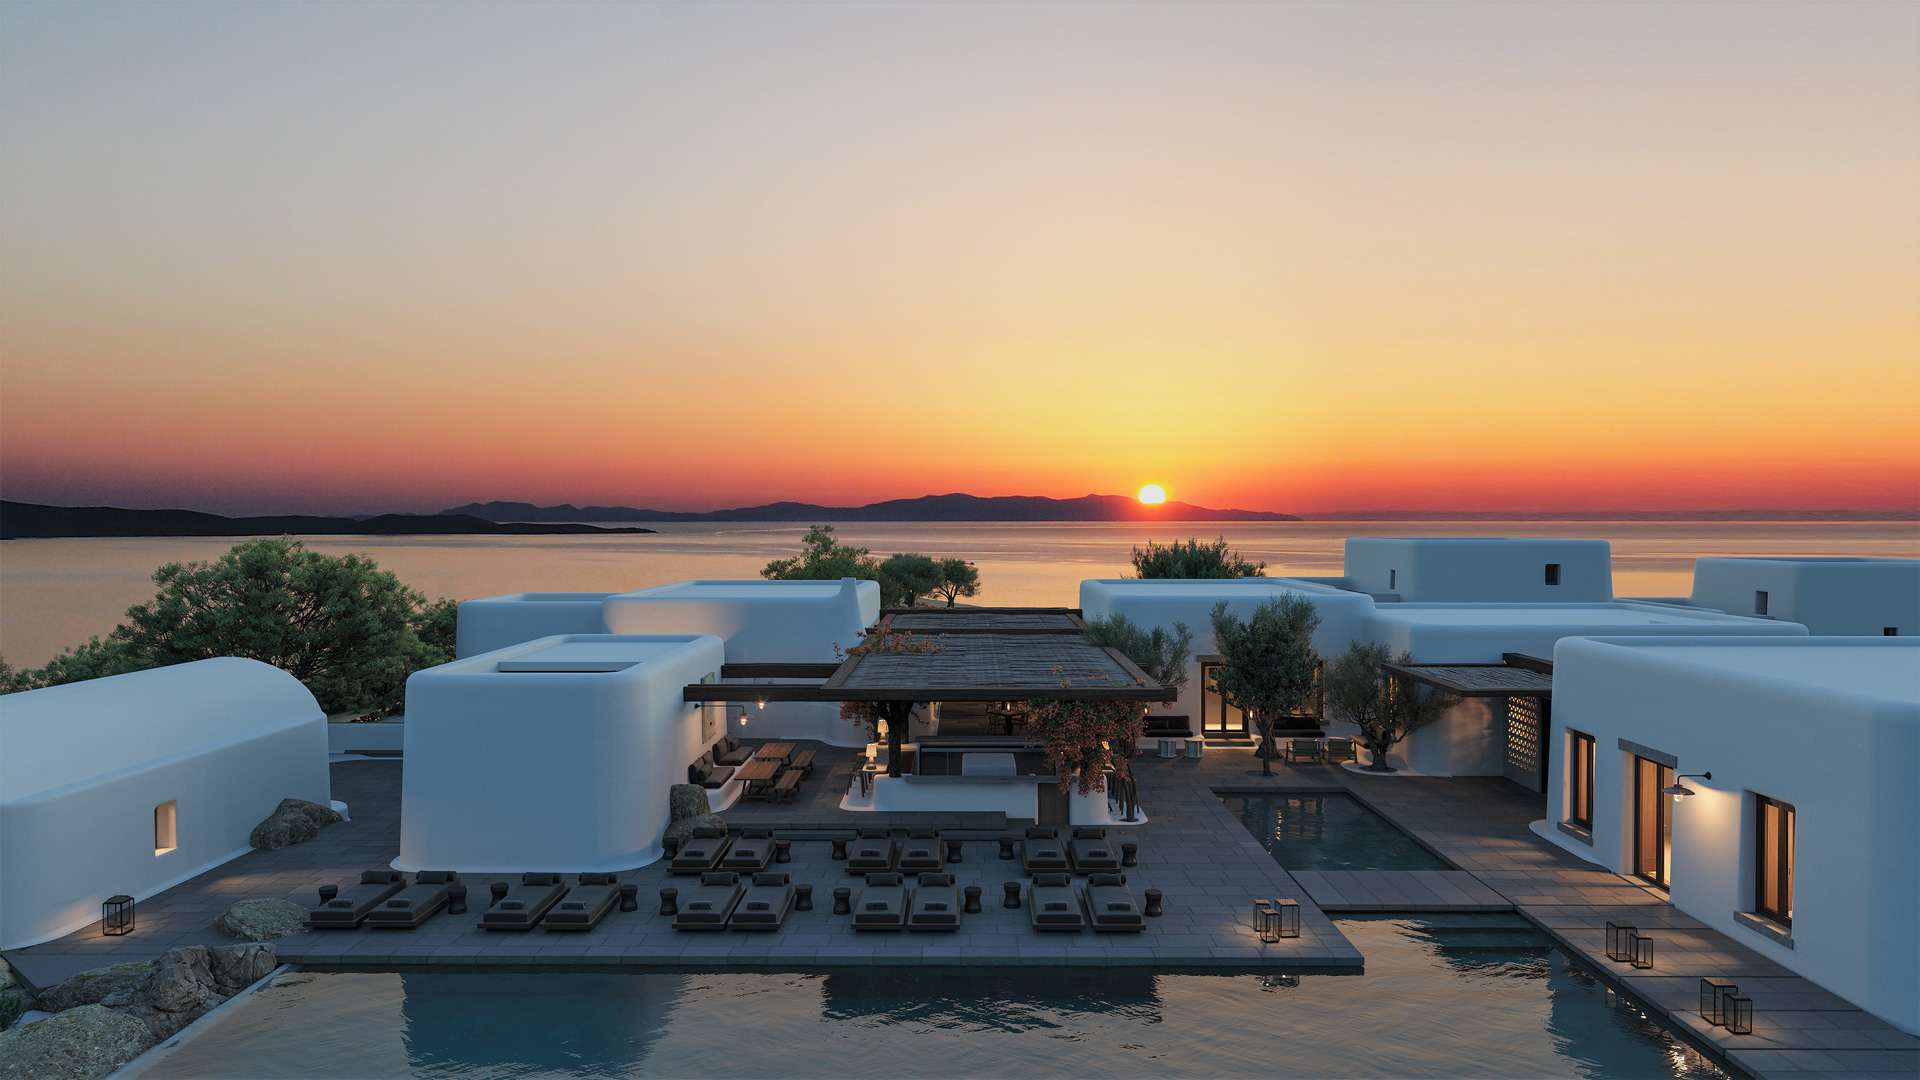 Kalesma Mykonos Luxury Hotel Greece - Casol